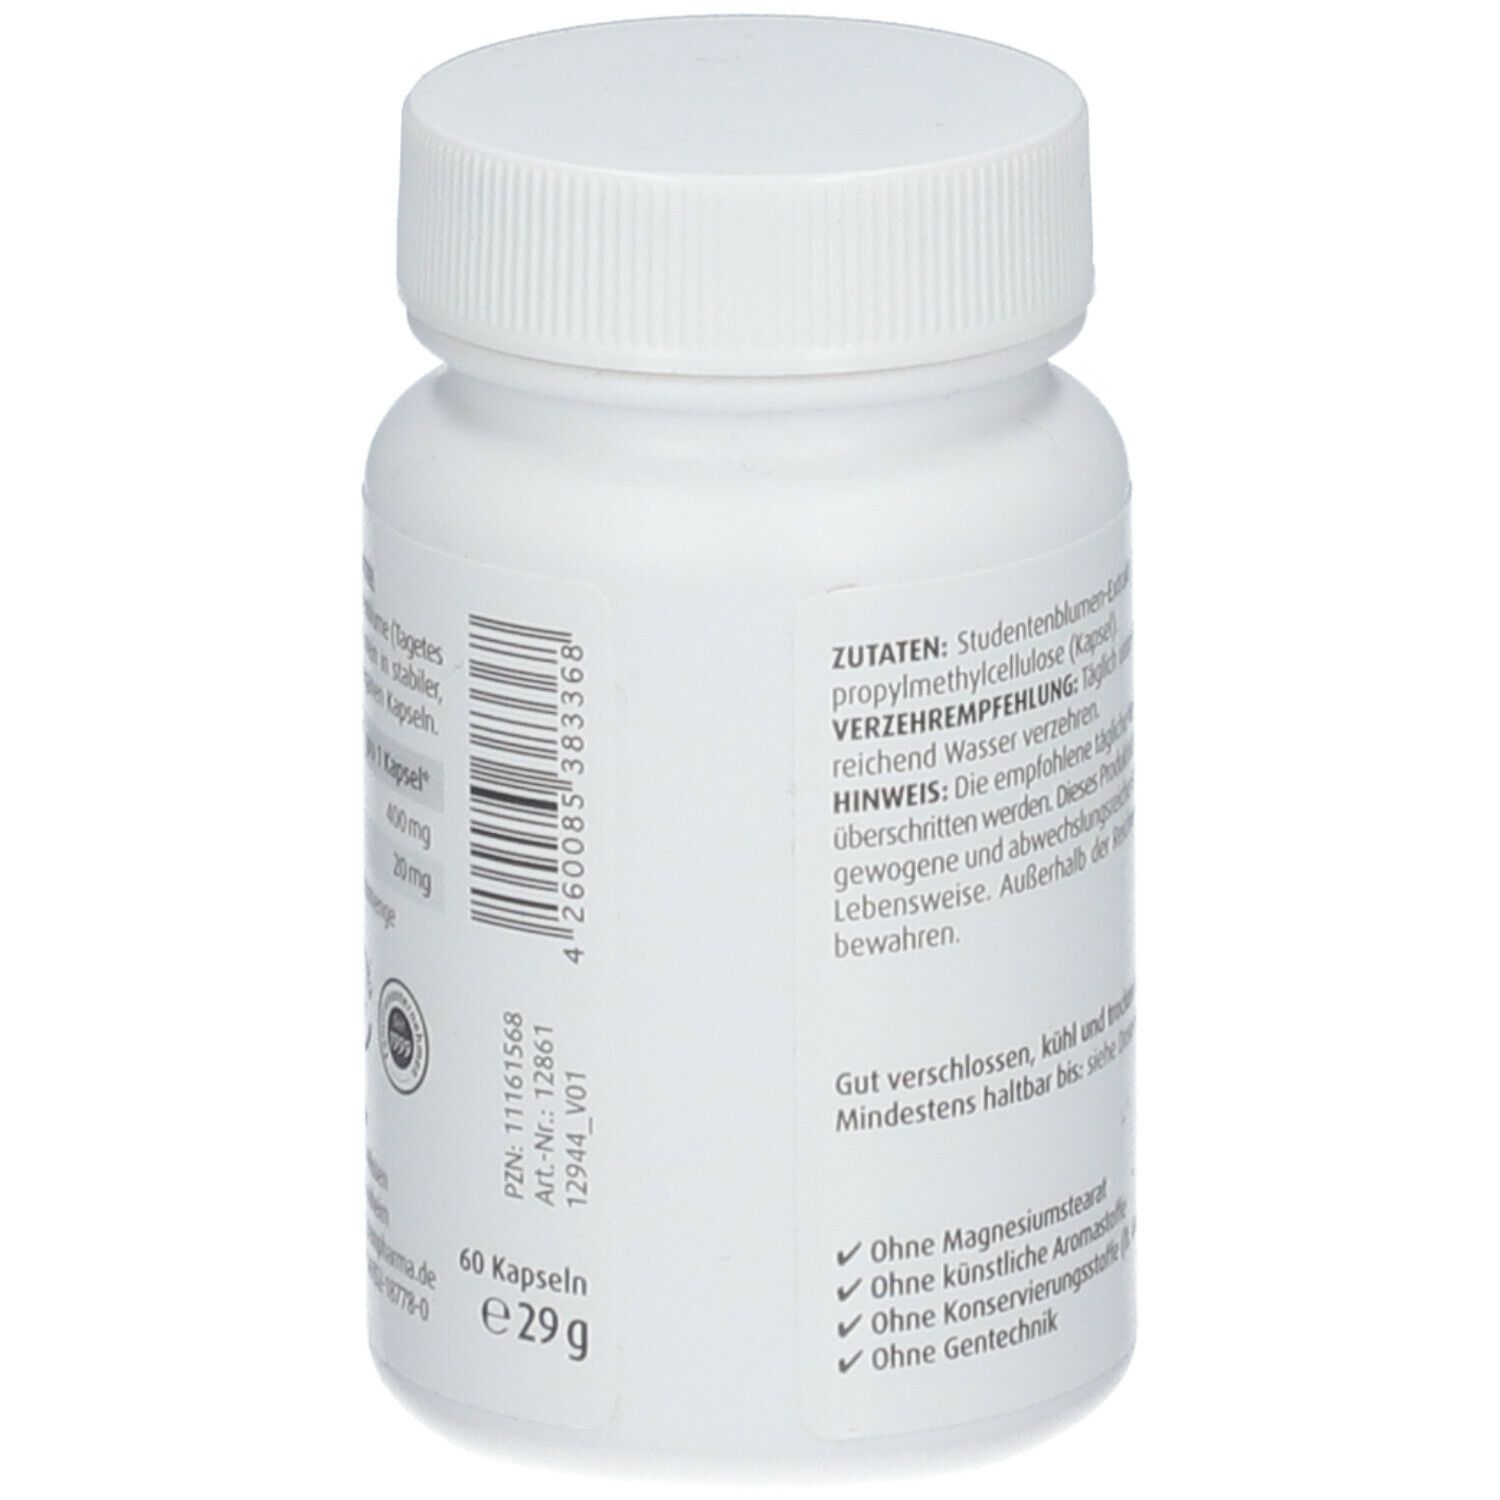 ZeinPharma® Lutein Kapseln 20 mg ZeinPhama